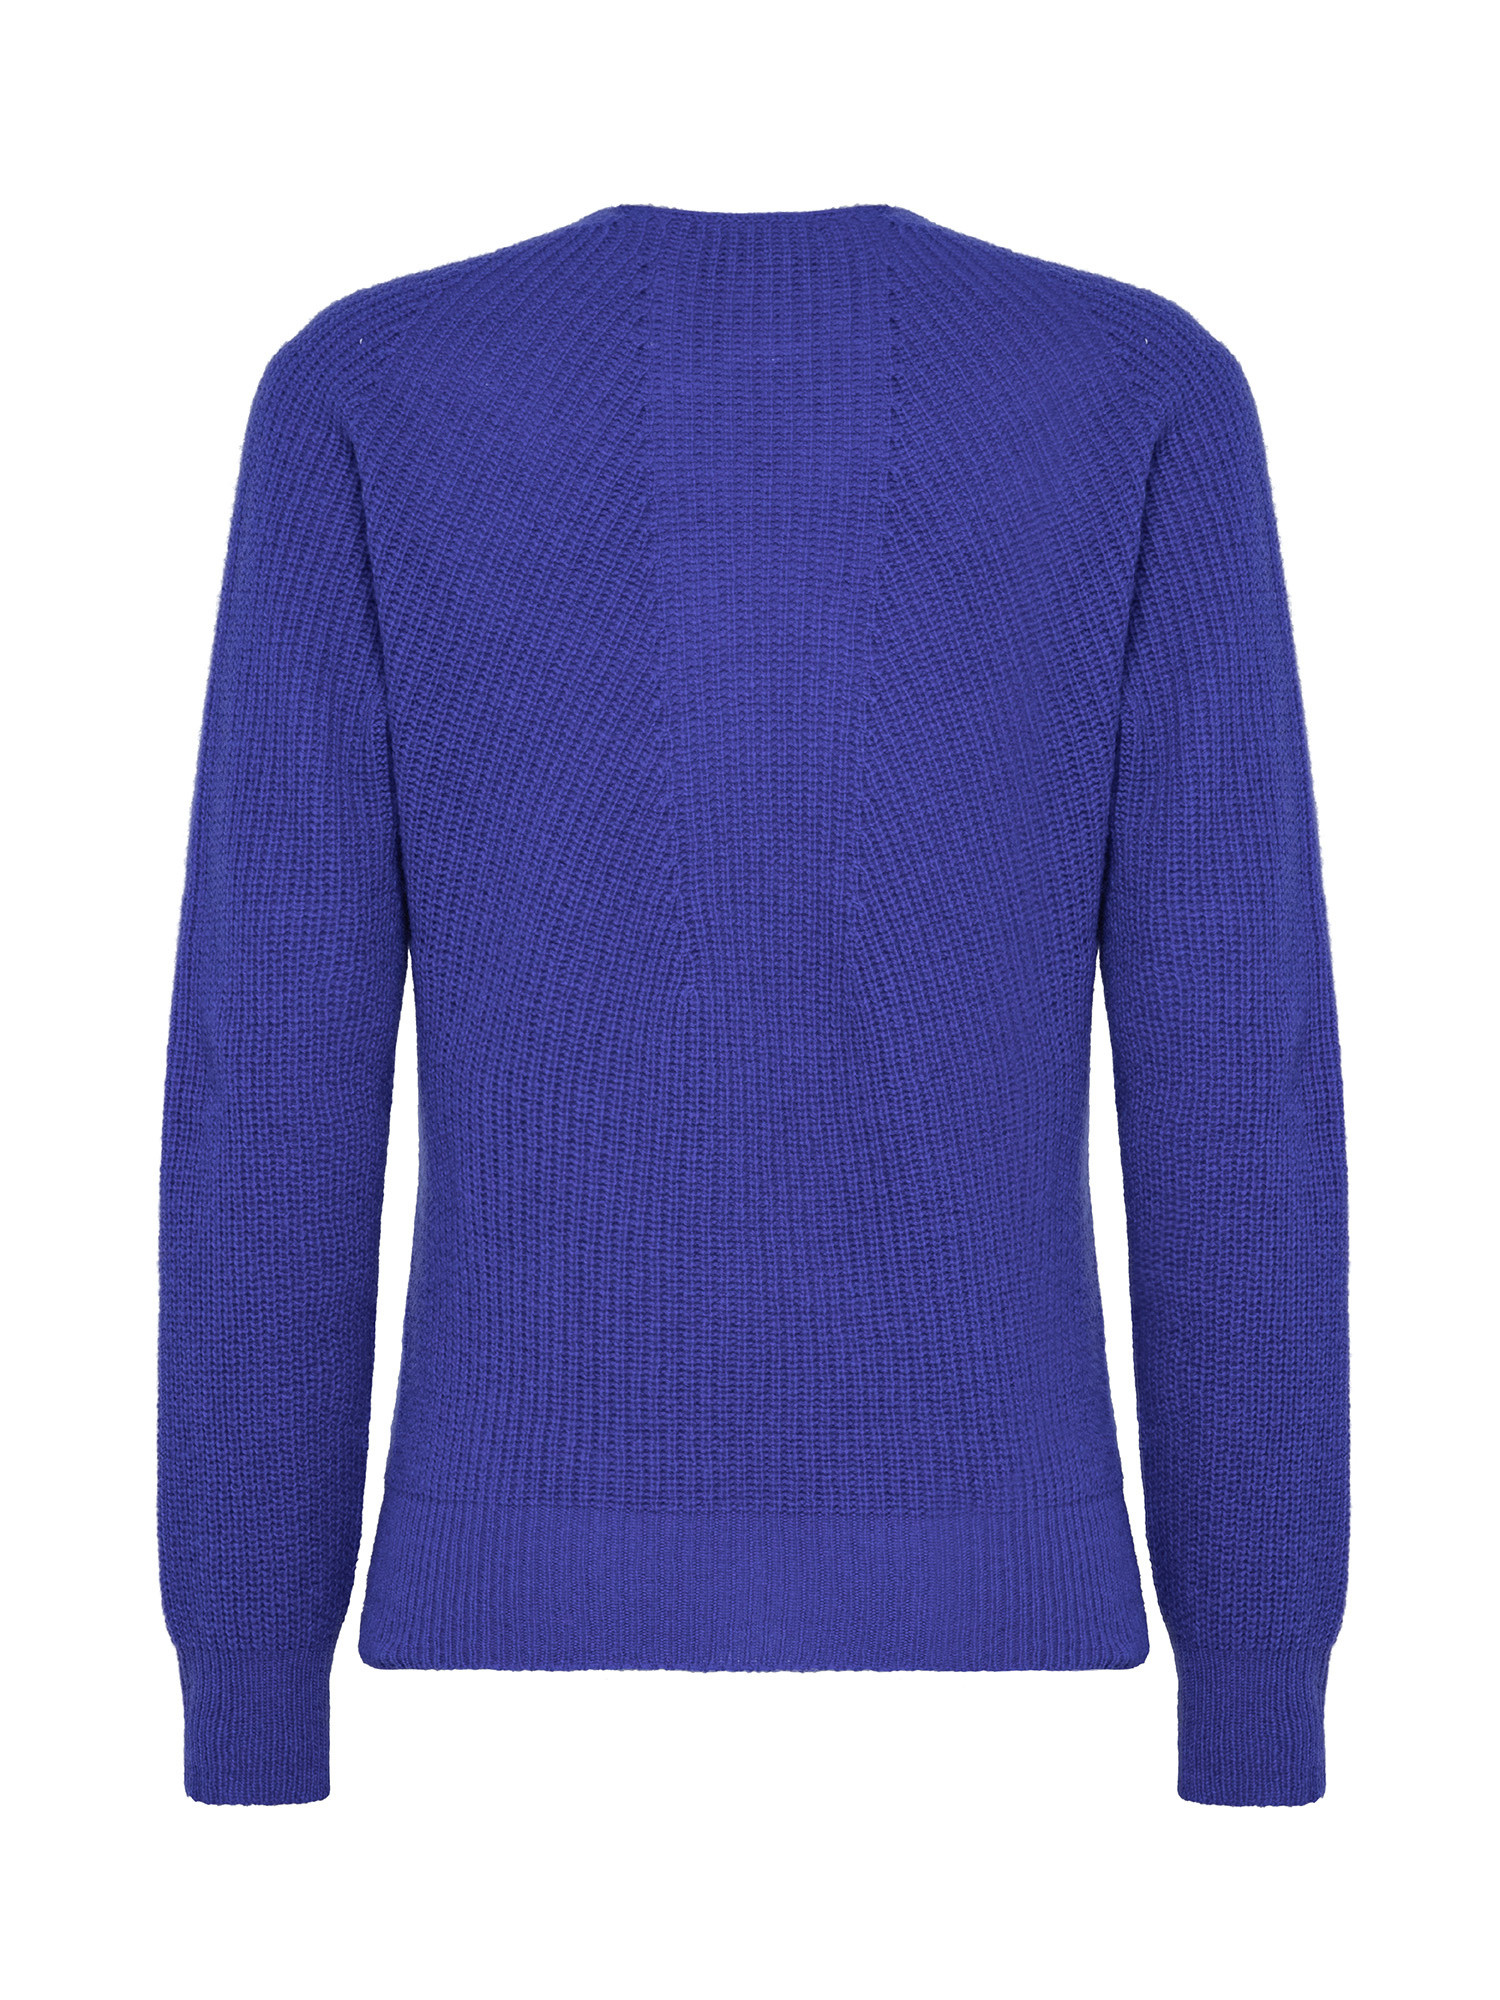 K Collection - V-neck sweater, Royal Blue, large image number 1